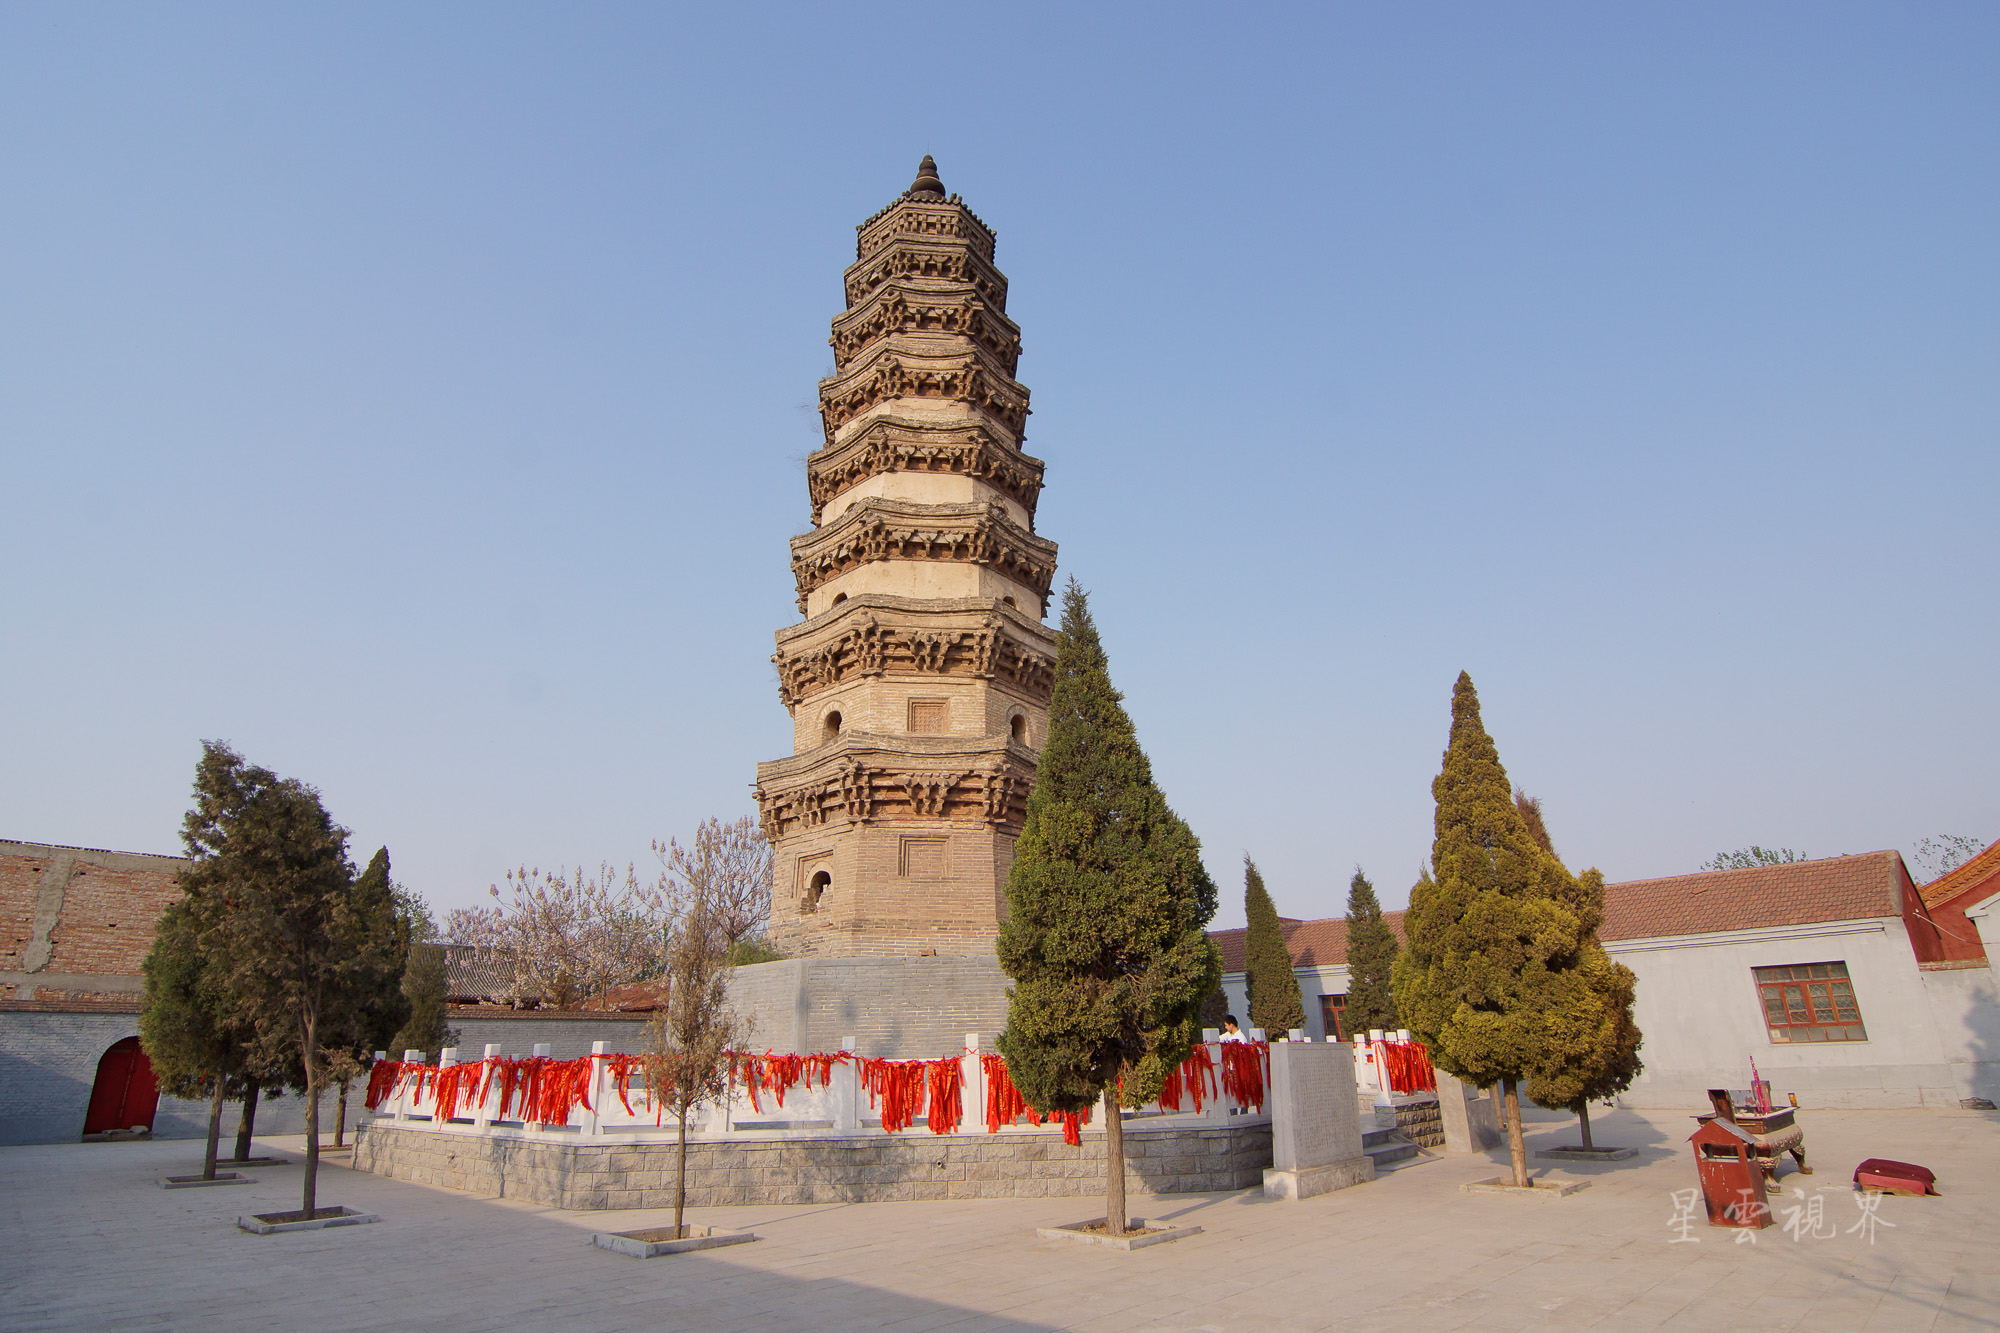 河北南宫普彤寺竟然矗立一座中国第一佛塔